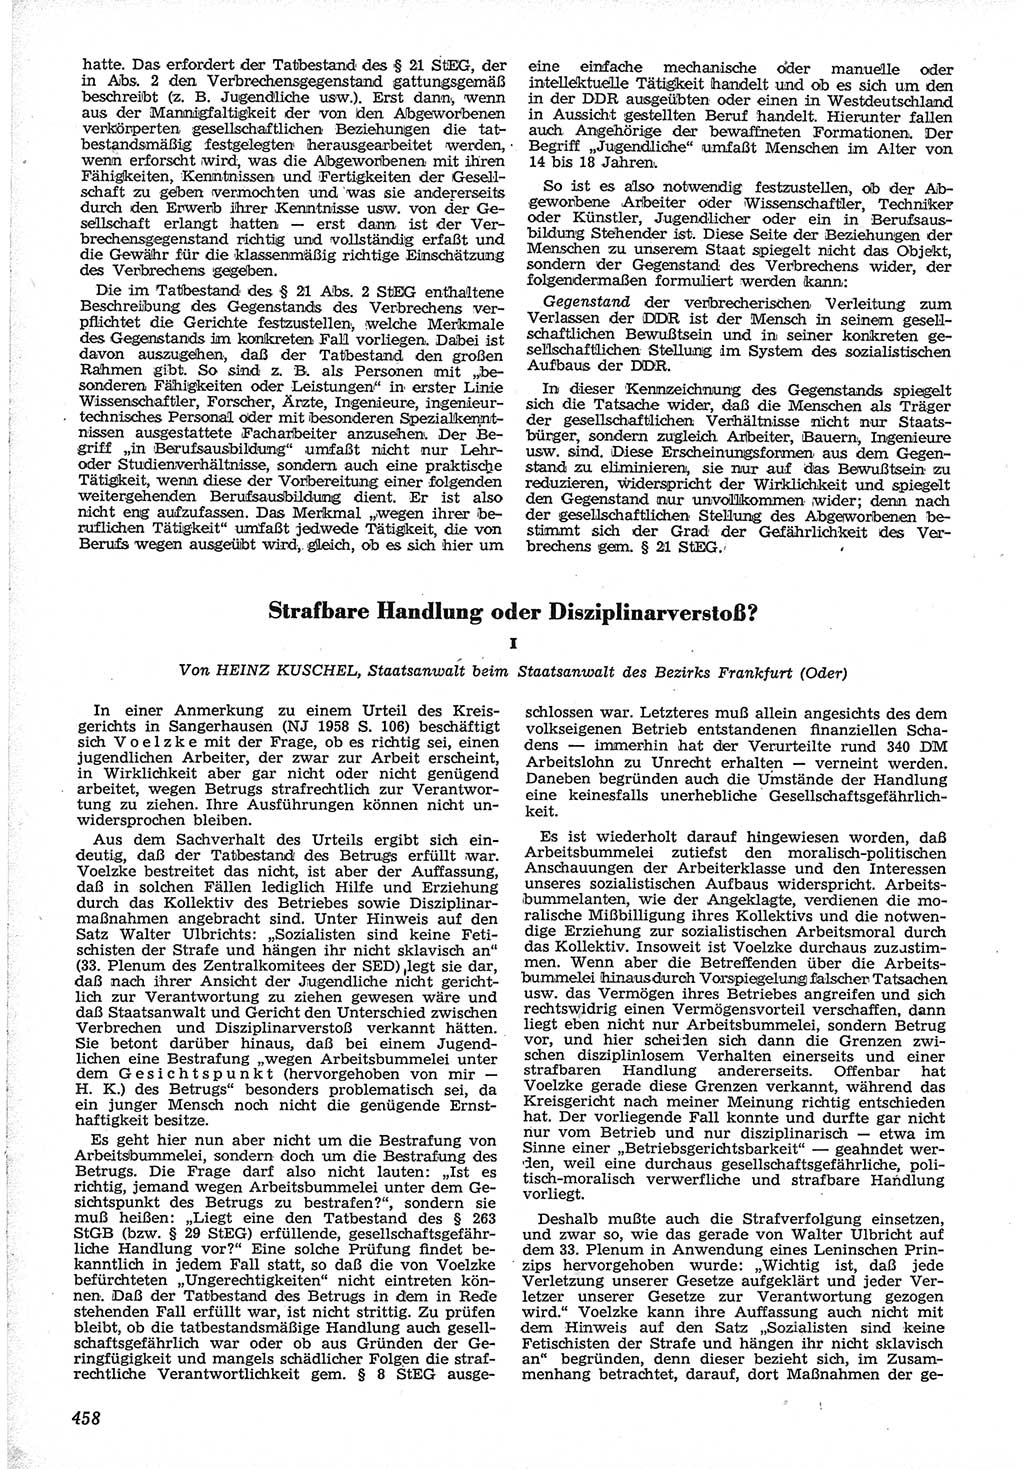 Neue Justiz (NJ), Zeitschrift für Recht und Rechtswissenschaft [Deutsche Demokratische Republik (DDR)], 12. Jahrgang 1958, Seite 458 (NJ DDR 1958, S. 458)